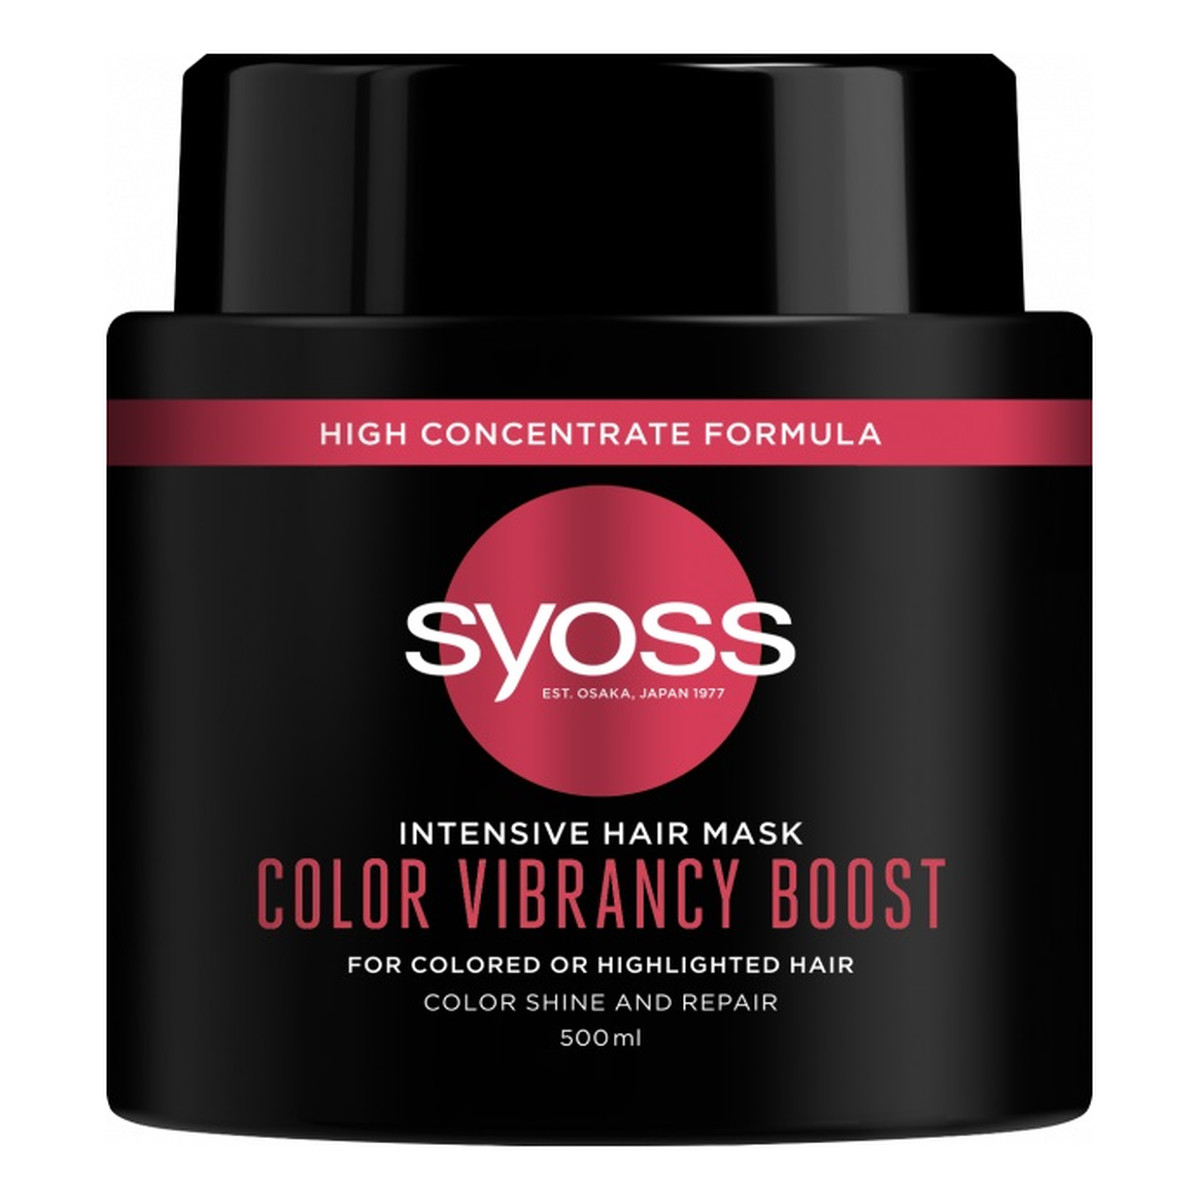 Syoss Intensive hair mask color vibrancy boost intensywnie regenerująca maska do włosów farbowanych i rozjaśnianych 500ml